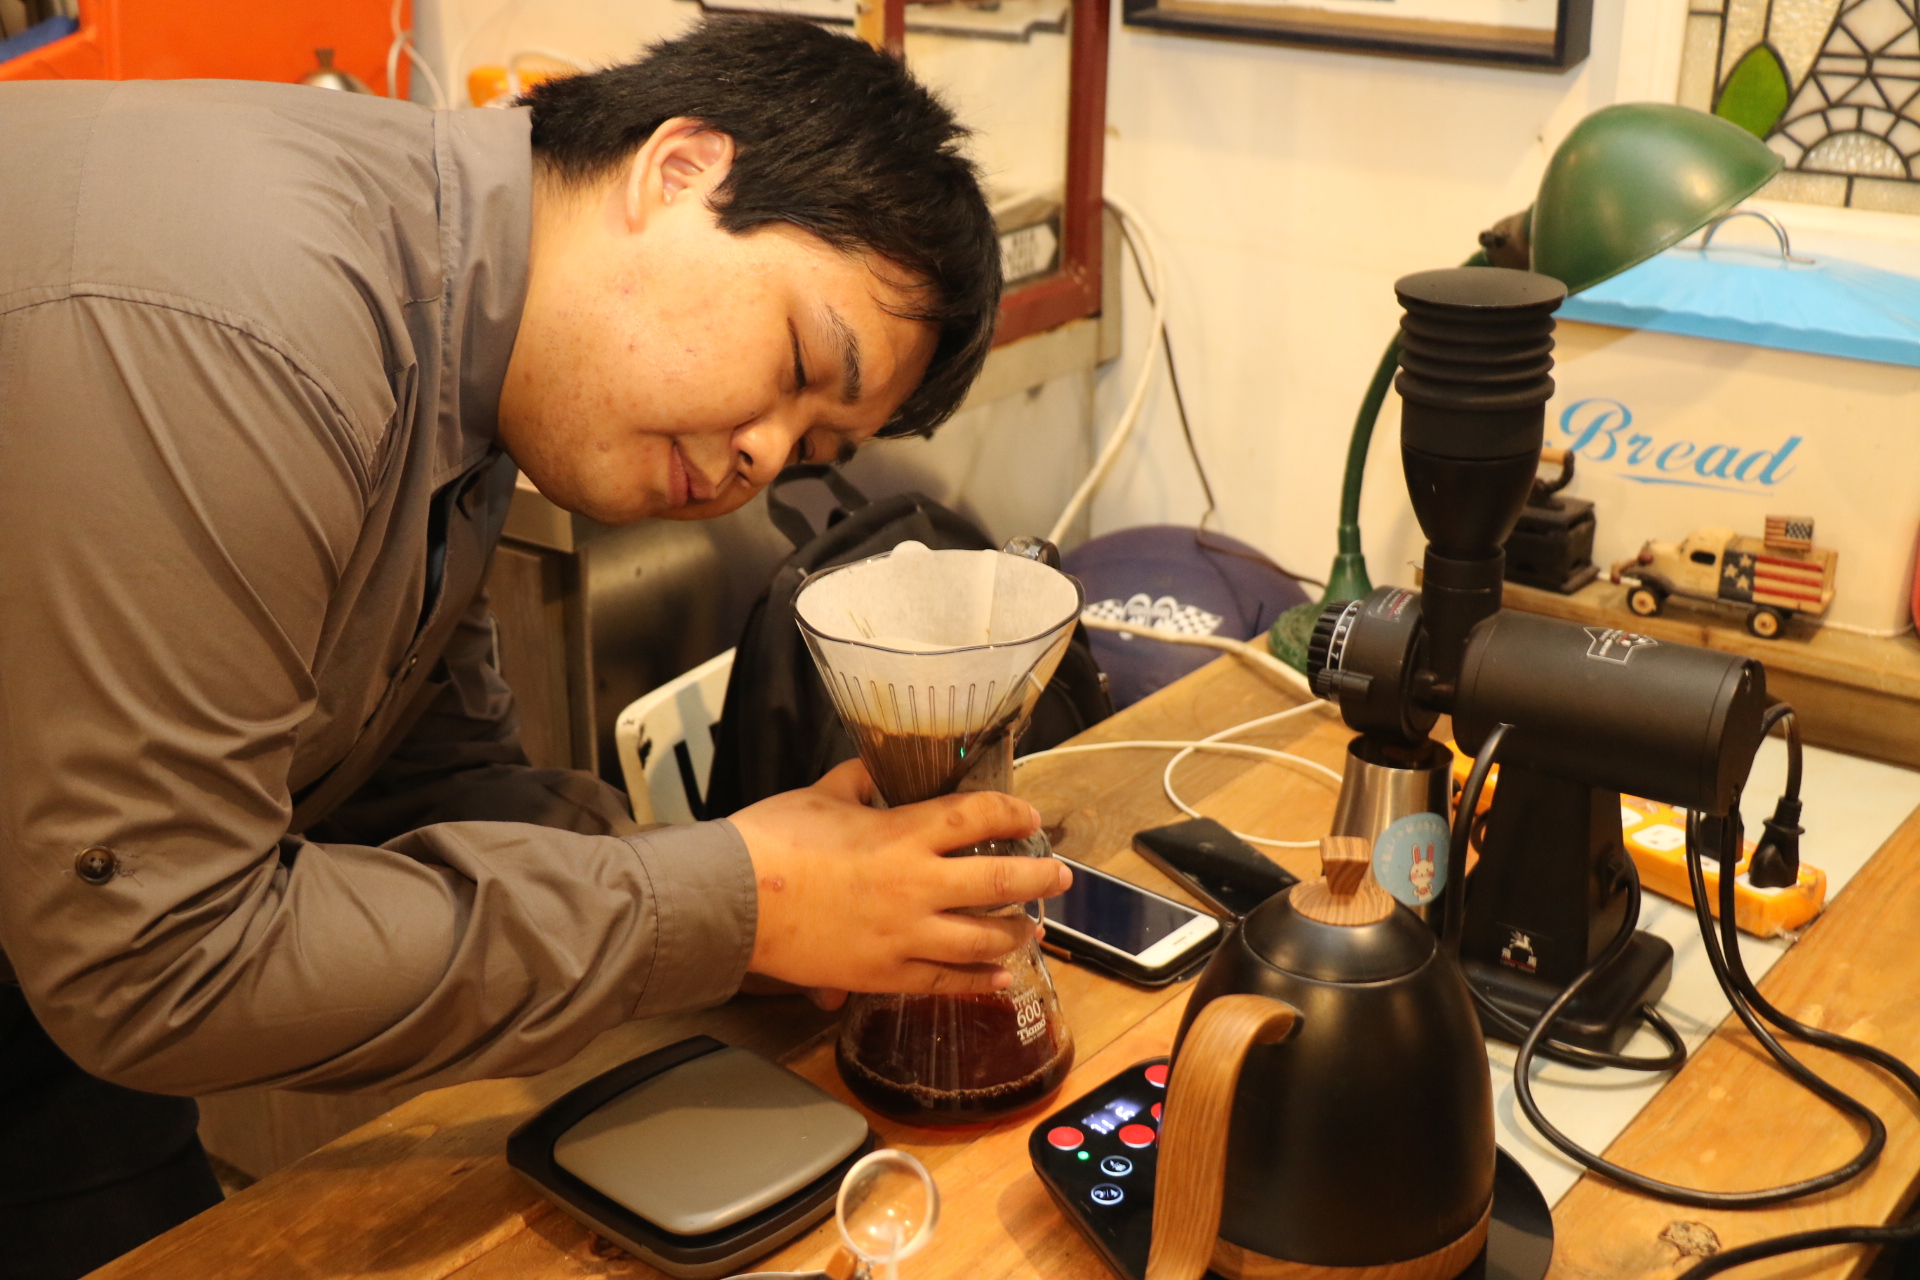 晉 宏 學 習 沖 泡 咖 啡 仰 賴 兩 支 手 機 與 藍 芽 溫 控 壺 和 語 音 磅 秤 等 輔 具 。 